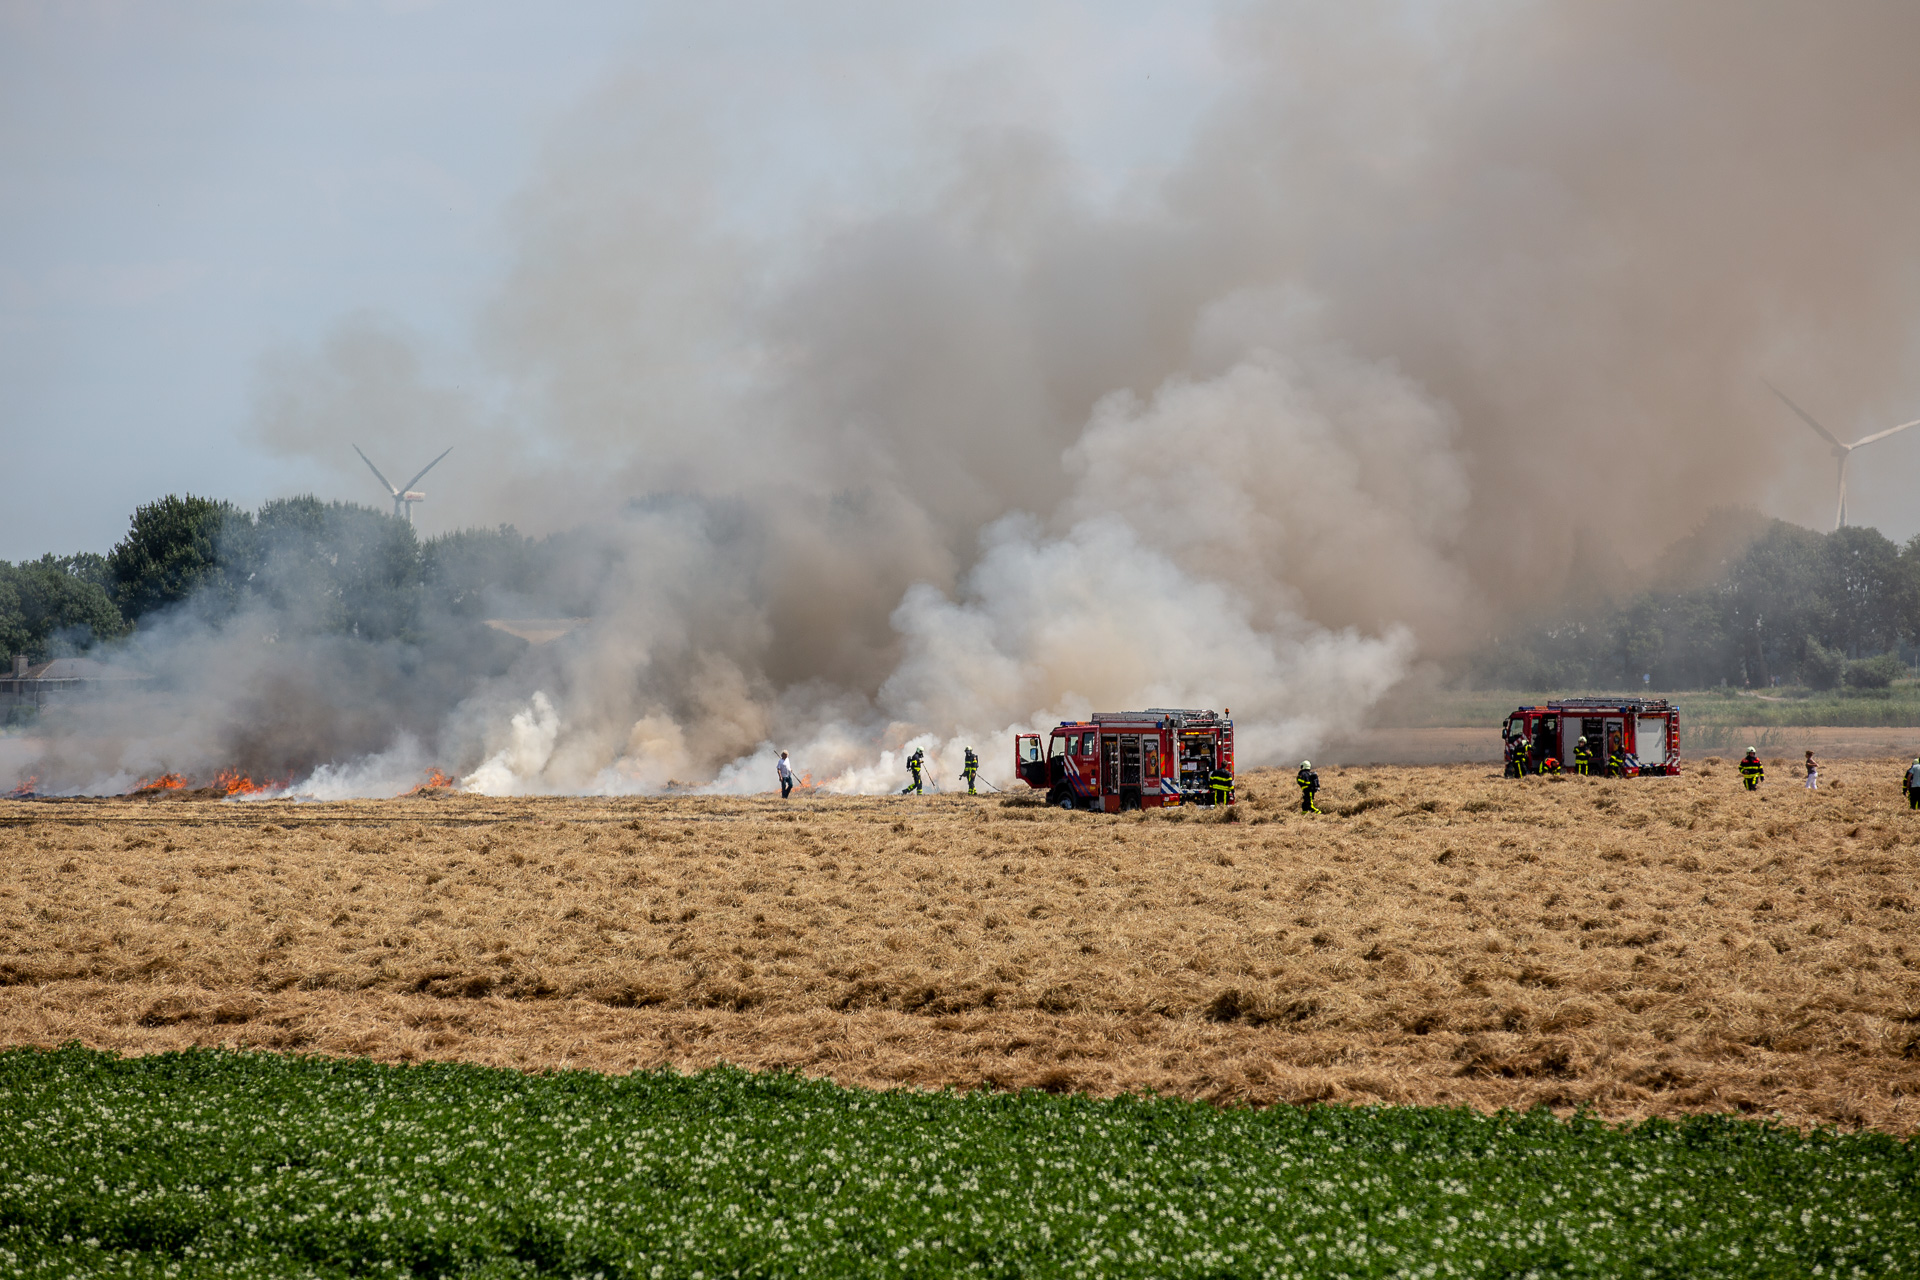 Flink stuk droog grasland in brand aan Kwartiersedijk in Fijnaart